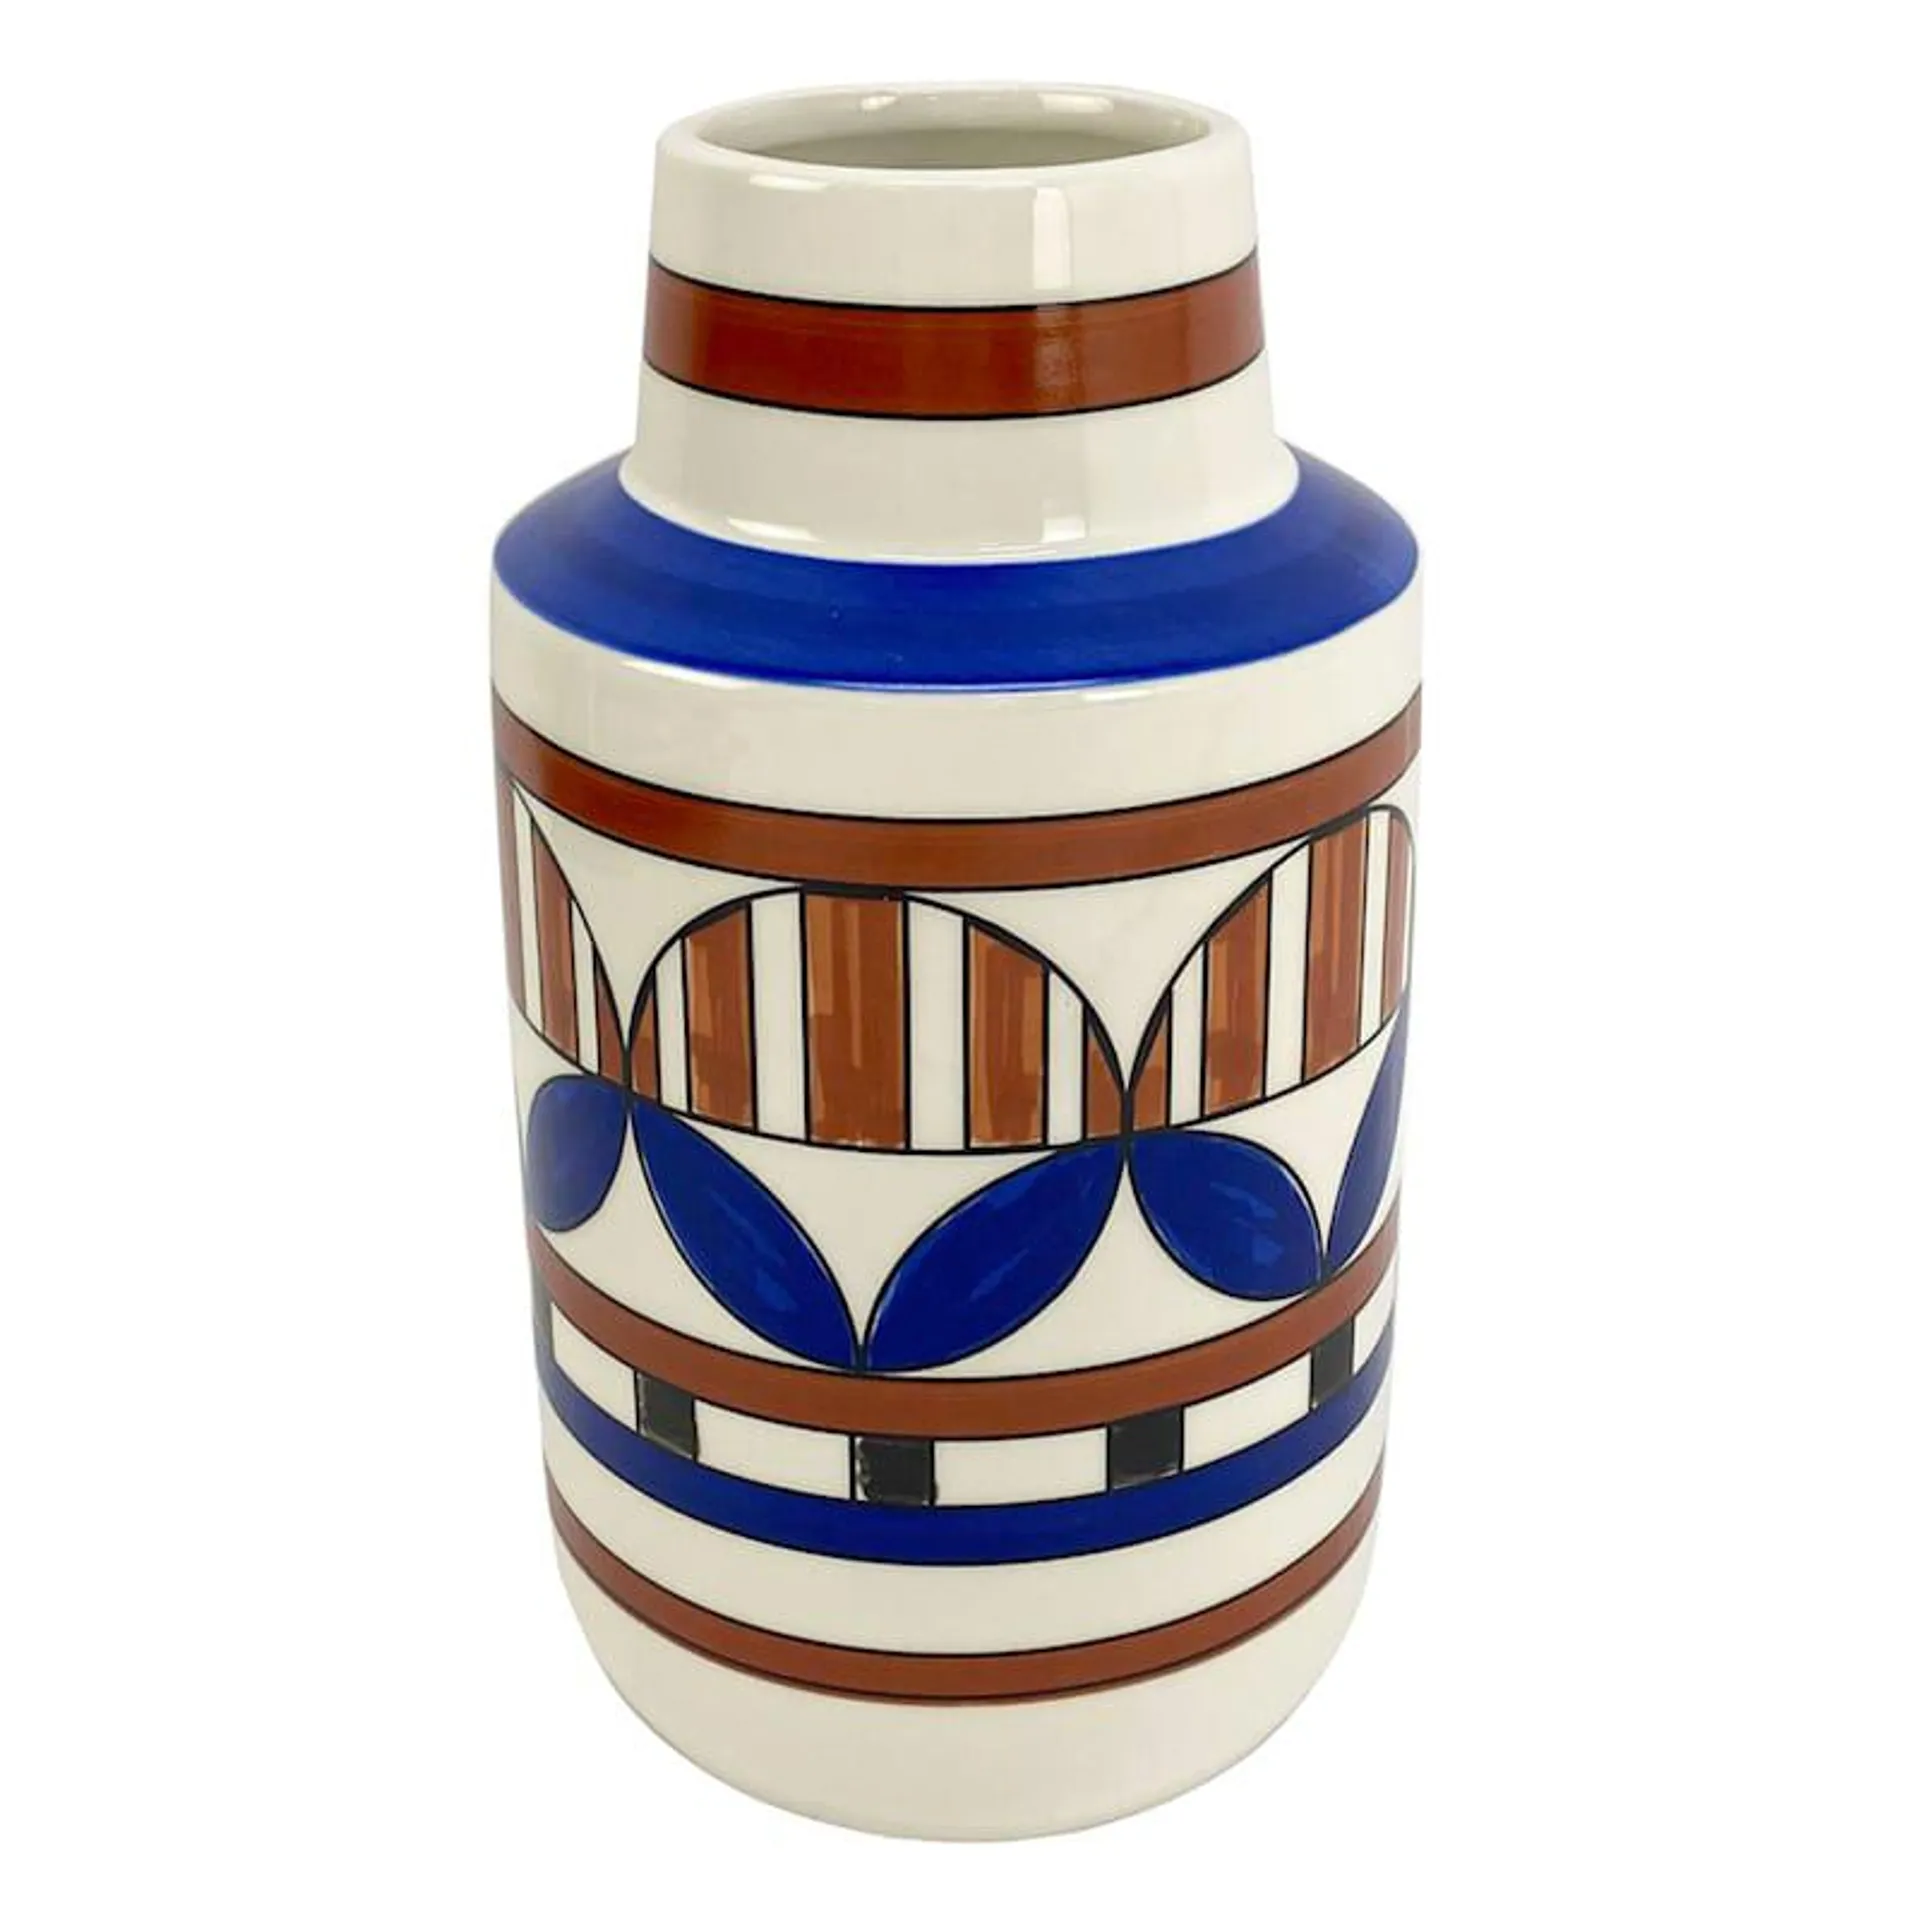 Multicolor Printed Ceramic Vase, 10"